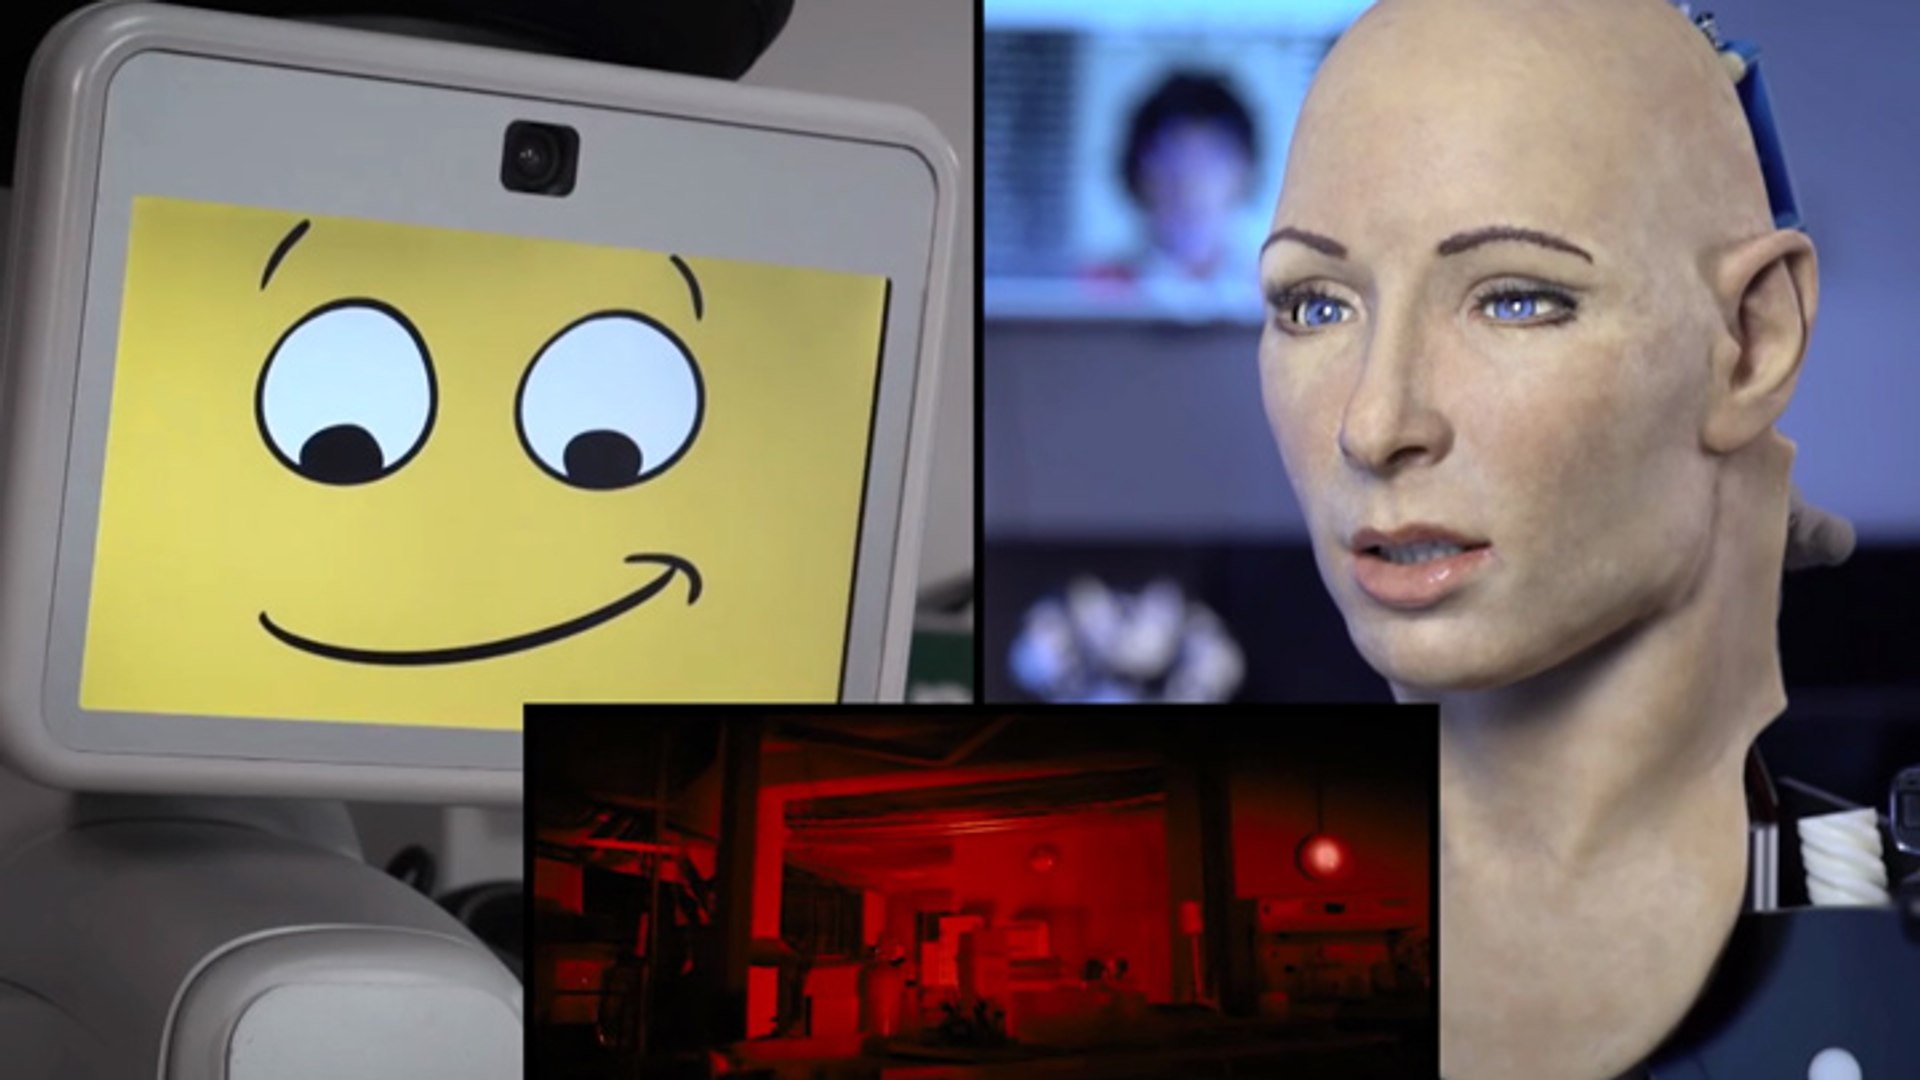 Deux robots réagissent devant un film angoissant